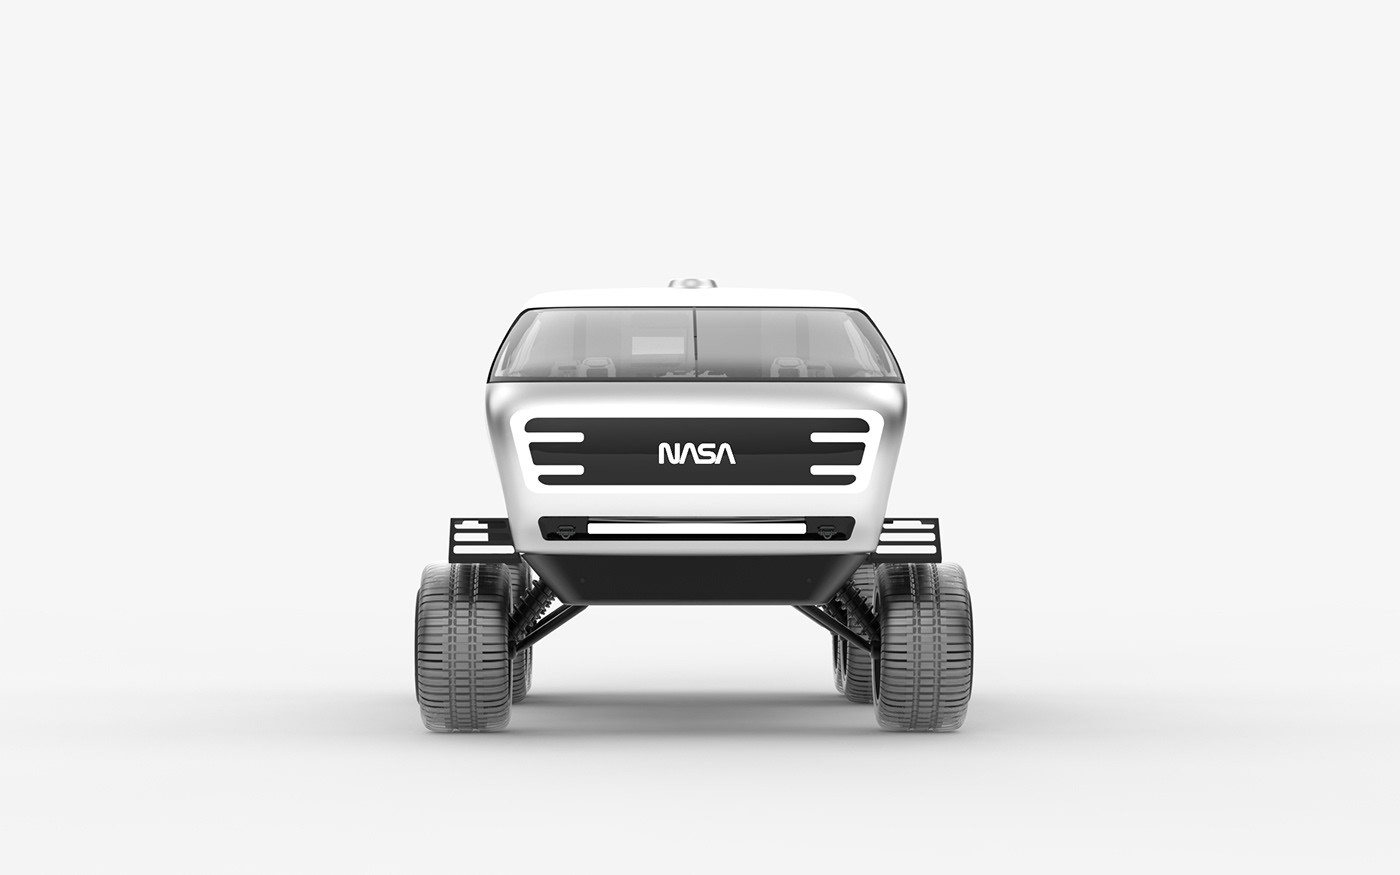 lunar industrial design  product design  nasa moon Vehicle transportation 3D Render lunar vehicle